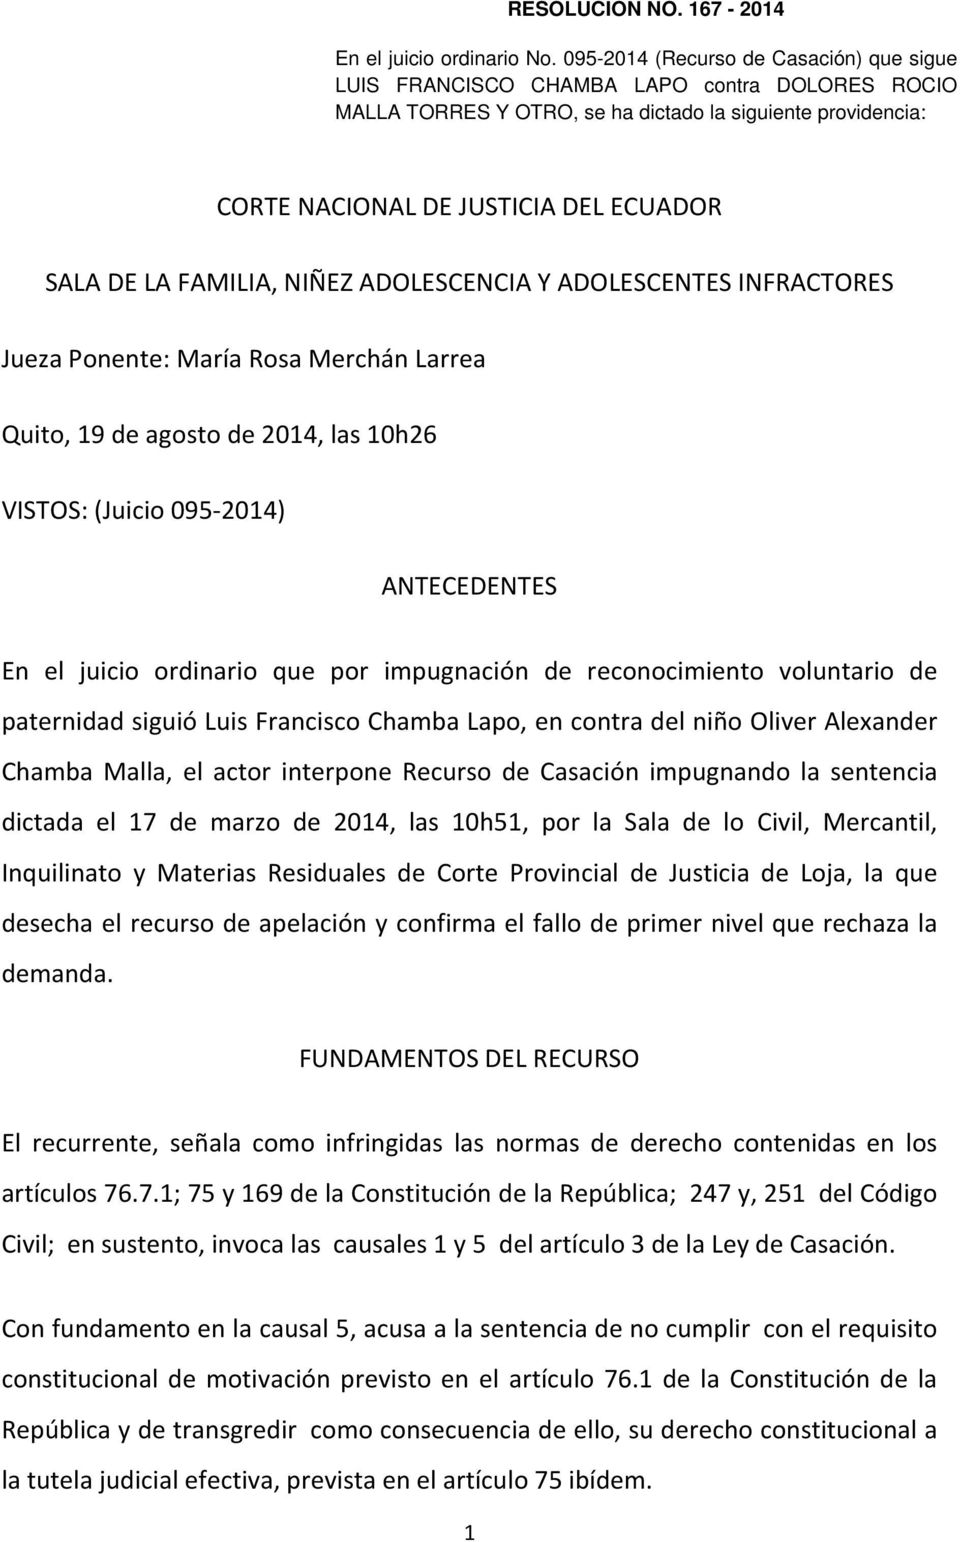 FAMILIA, NIÑEZ ADOLESCENCIA Y ADOLESCENTES INFRACTORES Jueza Ponente: María Rosa Merchán Larrea Quito, 19 de agosto de 2014, las 10h26 VISTOS: (Juicio 095-2014) ANTECEDENTES En el juicio ordinario